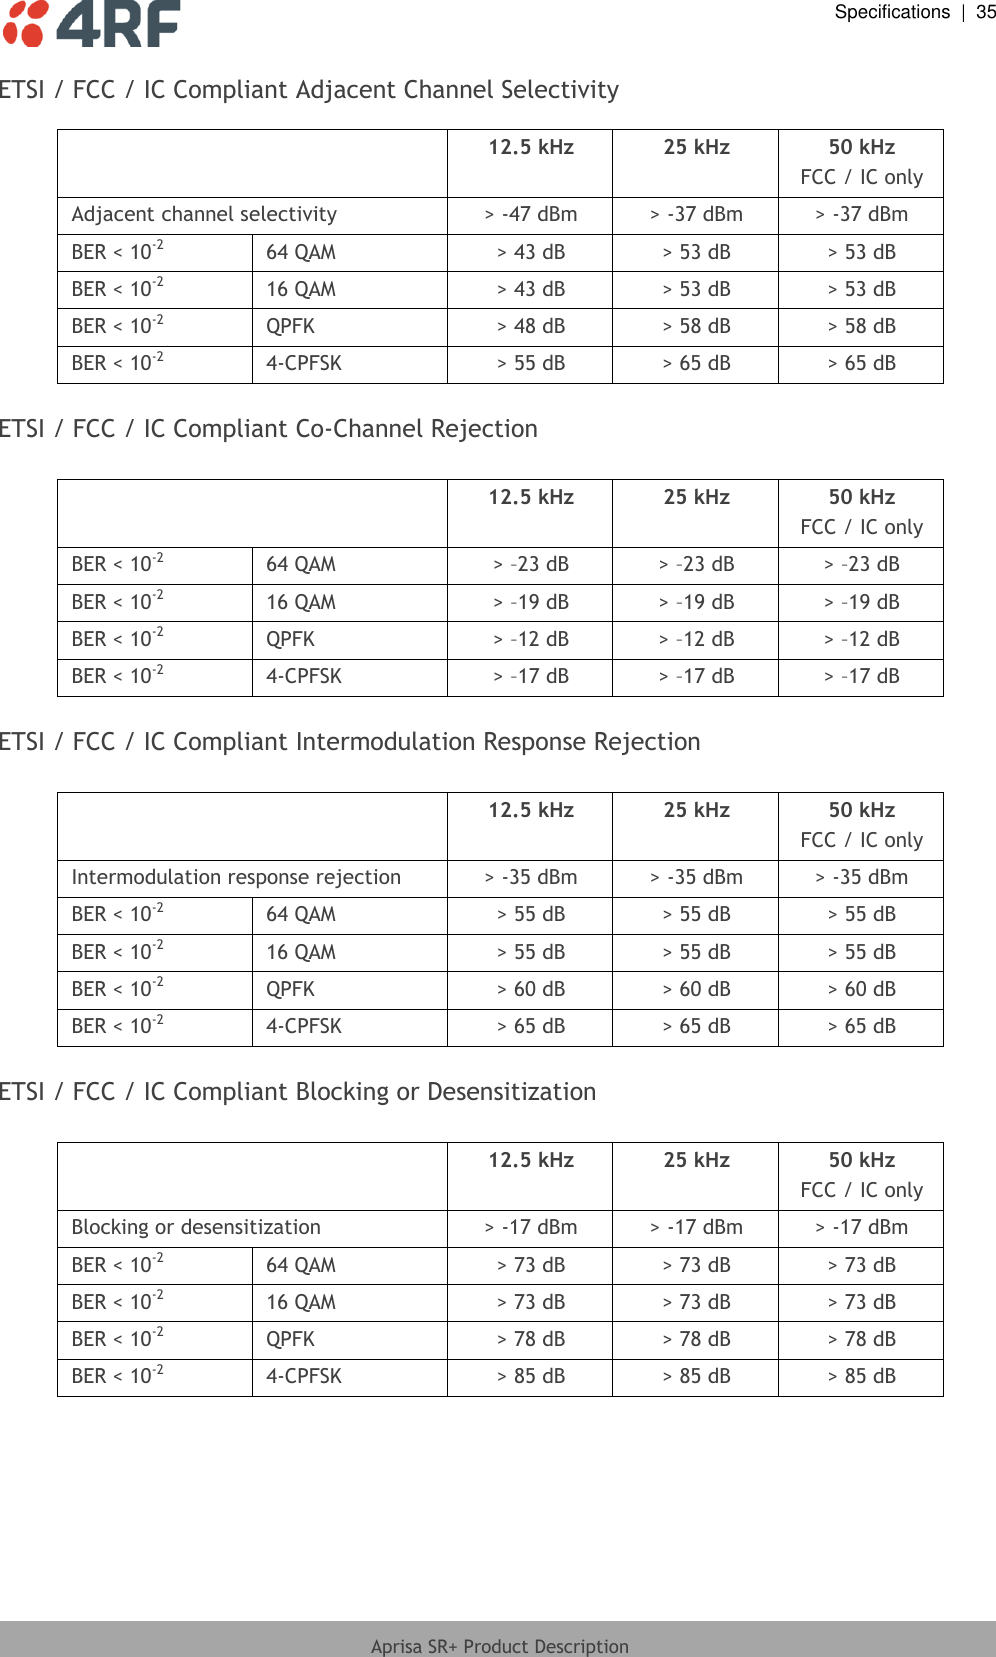  Specifications  |  35  Aprisa SR+ Product Description  ETSI / FCC / IC Compliant Adjacent Channel Selectivity   12.5 kHz 25 kHz 50 kHz FCC / IC only Adjacent channel selectivity &gt; -47 dBm &gt; -37 dBm &gt; -37 dBm BER &lt; 10-2 64 QAM &gt; 43 dB &gt; 53 dB &gt; 53 dB BER &lt; 10-2 16 QAM &gt; 43 dB &gt; 53 dB &gt; 53 dB BER &lt; 10-2 QPFK &gt; 48 dB &gt; 58 dB &gt; 58 dB BER &lt; 10-2 4-CPFSK &gt; 55 dB &gt; 65 dB &gt; 65 dB  ETSI / FCC / IC Compliant Co-Channel Rejection   12.5 kHz 25 kHz 50 kHz FCC / IC only BER &lt; 10-2 64 QAM &gt; –23 dB &gt; –23 dB &gt; –23 dB BER &lt; 10-2 16 QAM &gt; –19 dB &gt; –19 dB &gt; –19 dB BER &lt; 10-2 QPFK &gt; –12 dB &gt; –12 dB &gt; –12 dB BER &lt; 10-2 4-CPFSK &gt; –17 dB &gt; –17 dB &gt; –17 dB  ETSI / FCC / IC Compliant Intermodulation Response Rejection   12.5 kHz 25 kHz 50 kHz FCC / IC only Intermodulation response rejection &gt; -35 dBm &gt; -35 dBm &gt; -35 dBm BER &lt; 10-2 64 QAM &gt; 55 dB &gt; 55 dB &gt; 55 dB BER &lt; 10-2 16 QAM &gt; 55 dB &gt; 55 dB &gt; 55 dB BER &lt; 10-2 QPFK &gt; 60 dB &gt; 60 dB &gt; 60 dB BER &lt; 10-2 4-CPFSK &gt; 65 dB &gt; 65 dB &gt; 65 dB  ETSI / FCC / IC Compliant Blocking or Desensitization   12.5 kHz 25 kHz 50 kHz FCC / IC only Blocking or desensitization &gt; -17 dBm &gt; -17 dBm &gt; -17 dBm BER &lt; 10-2 64 QAM &gt; 73 dB &gt; 73 dB &gt; 73 dB BER &lt; 10-2 16 QAM &gt; 73 dB &gt; 73 dB &gt; 73 dB BER &lt; 10-2 QPFK &gt; 78 dB &gt; 78 dB &gt; 78 dB BER &lt; 10-2 4-CPFSK &gt; 85 dB &gt; 85 dB &gt; 85 dB  